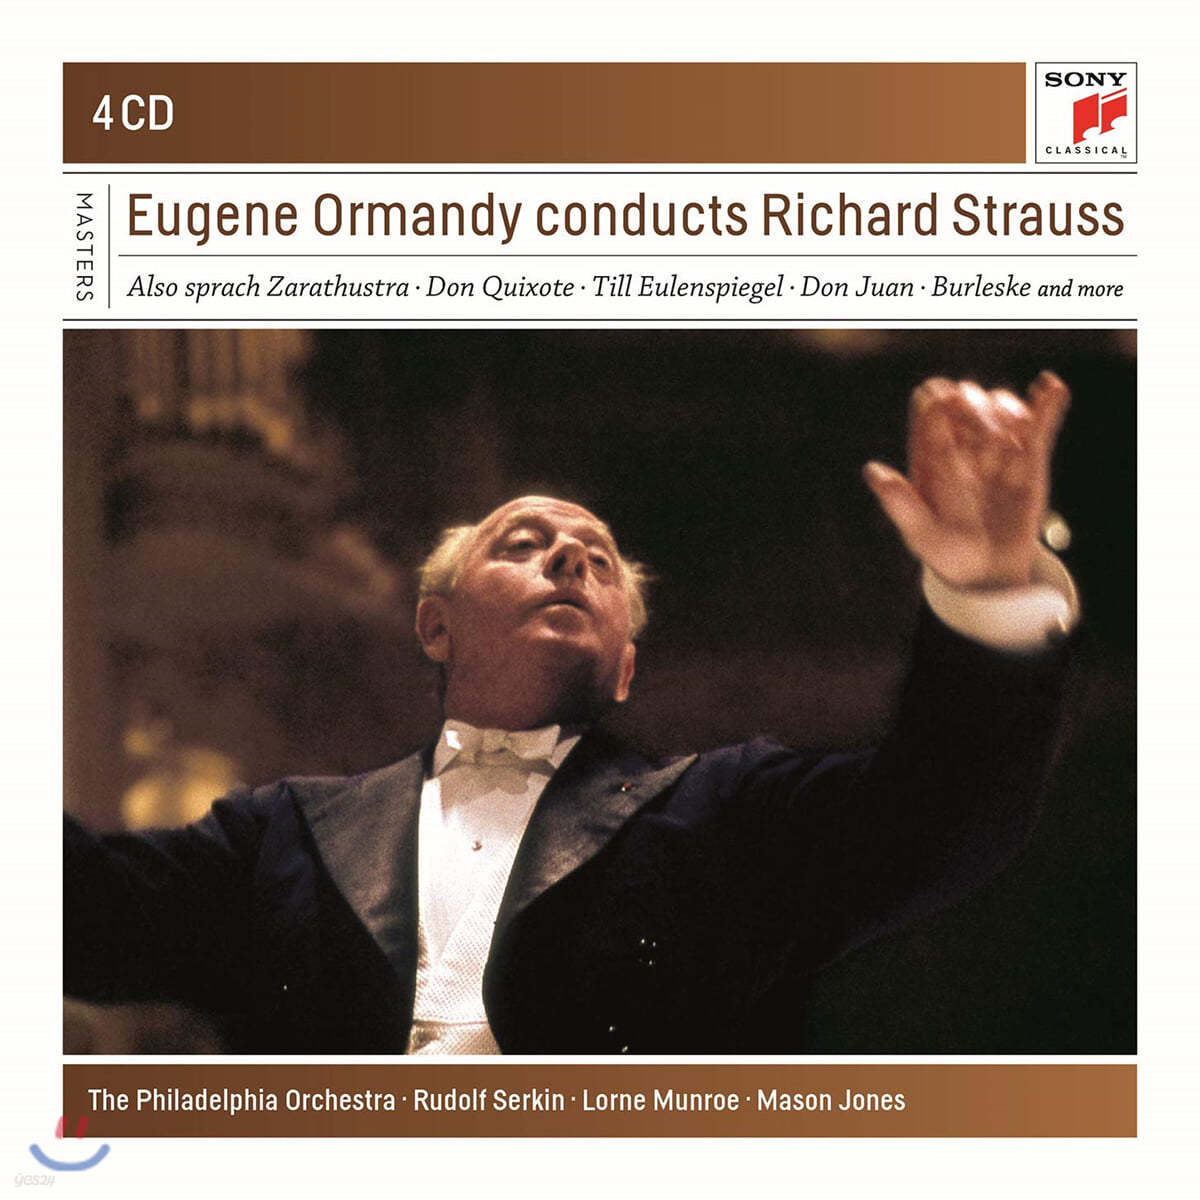 유진 오먼디가 지휘하는 리하르트 슈트라우스 (Eugene Ormandy Conducts Richard Strauss)